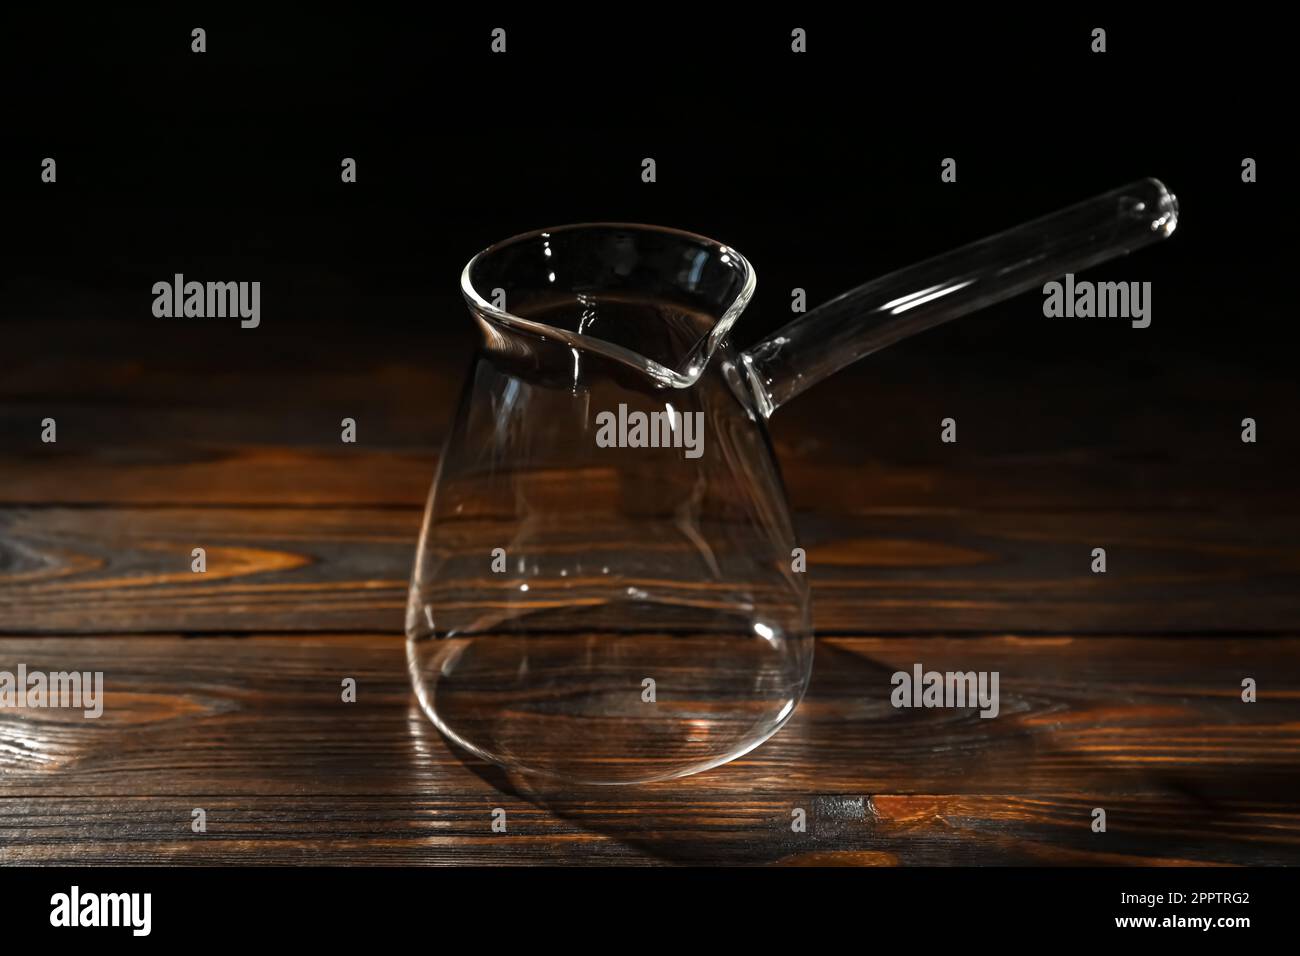 Vider la cafetière turque en verre sur une table en bois Photo Stock - Alamy